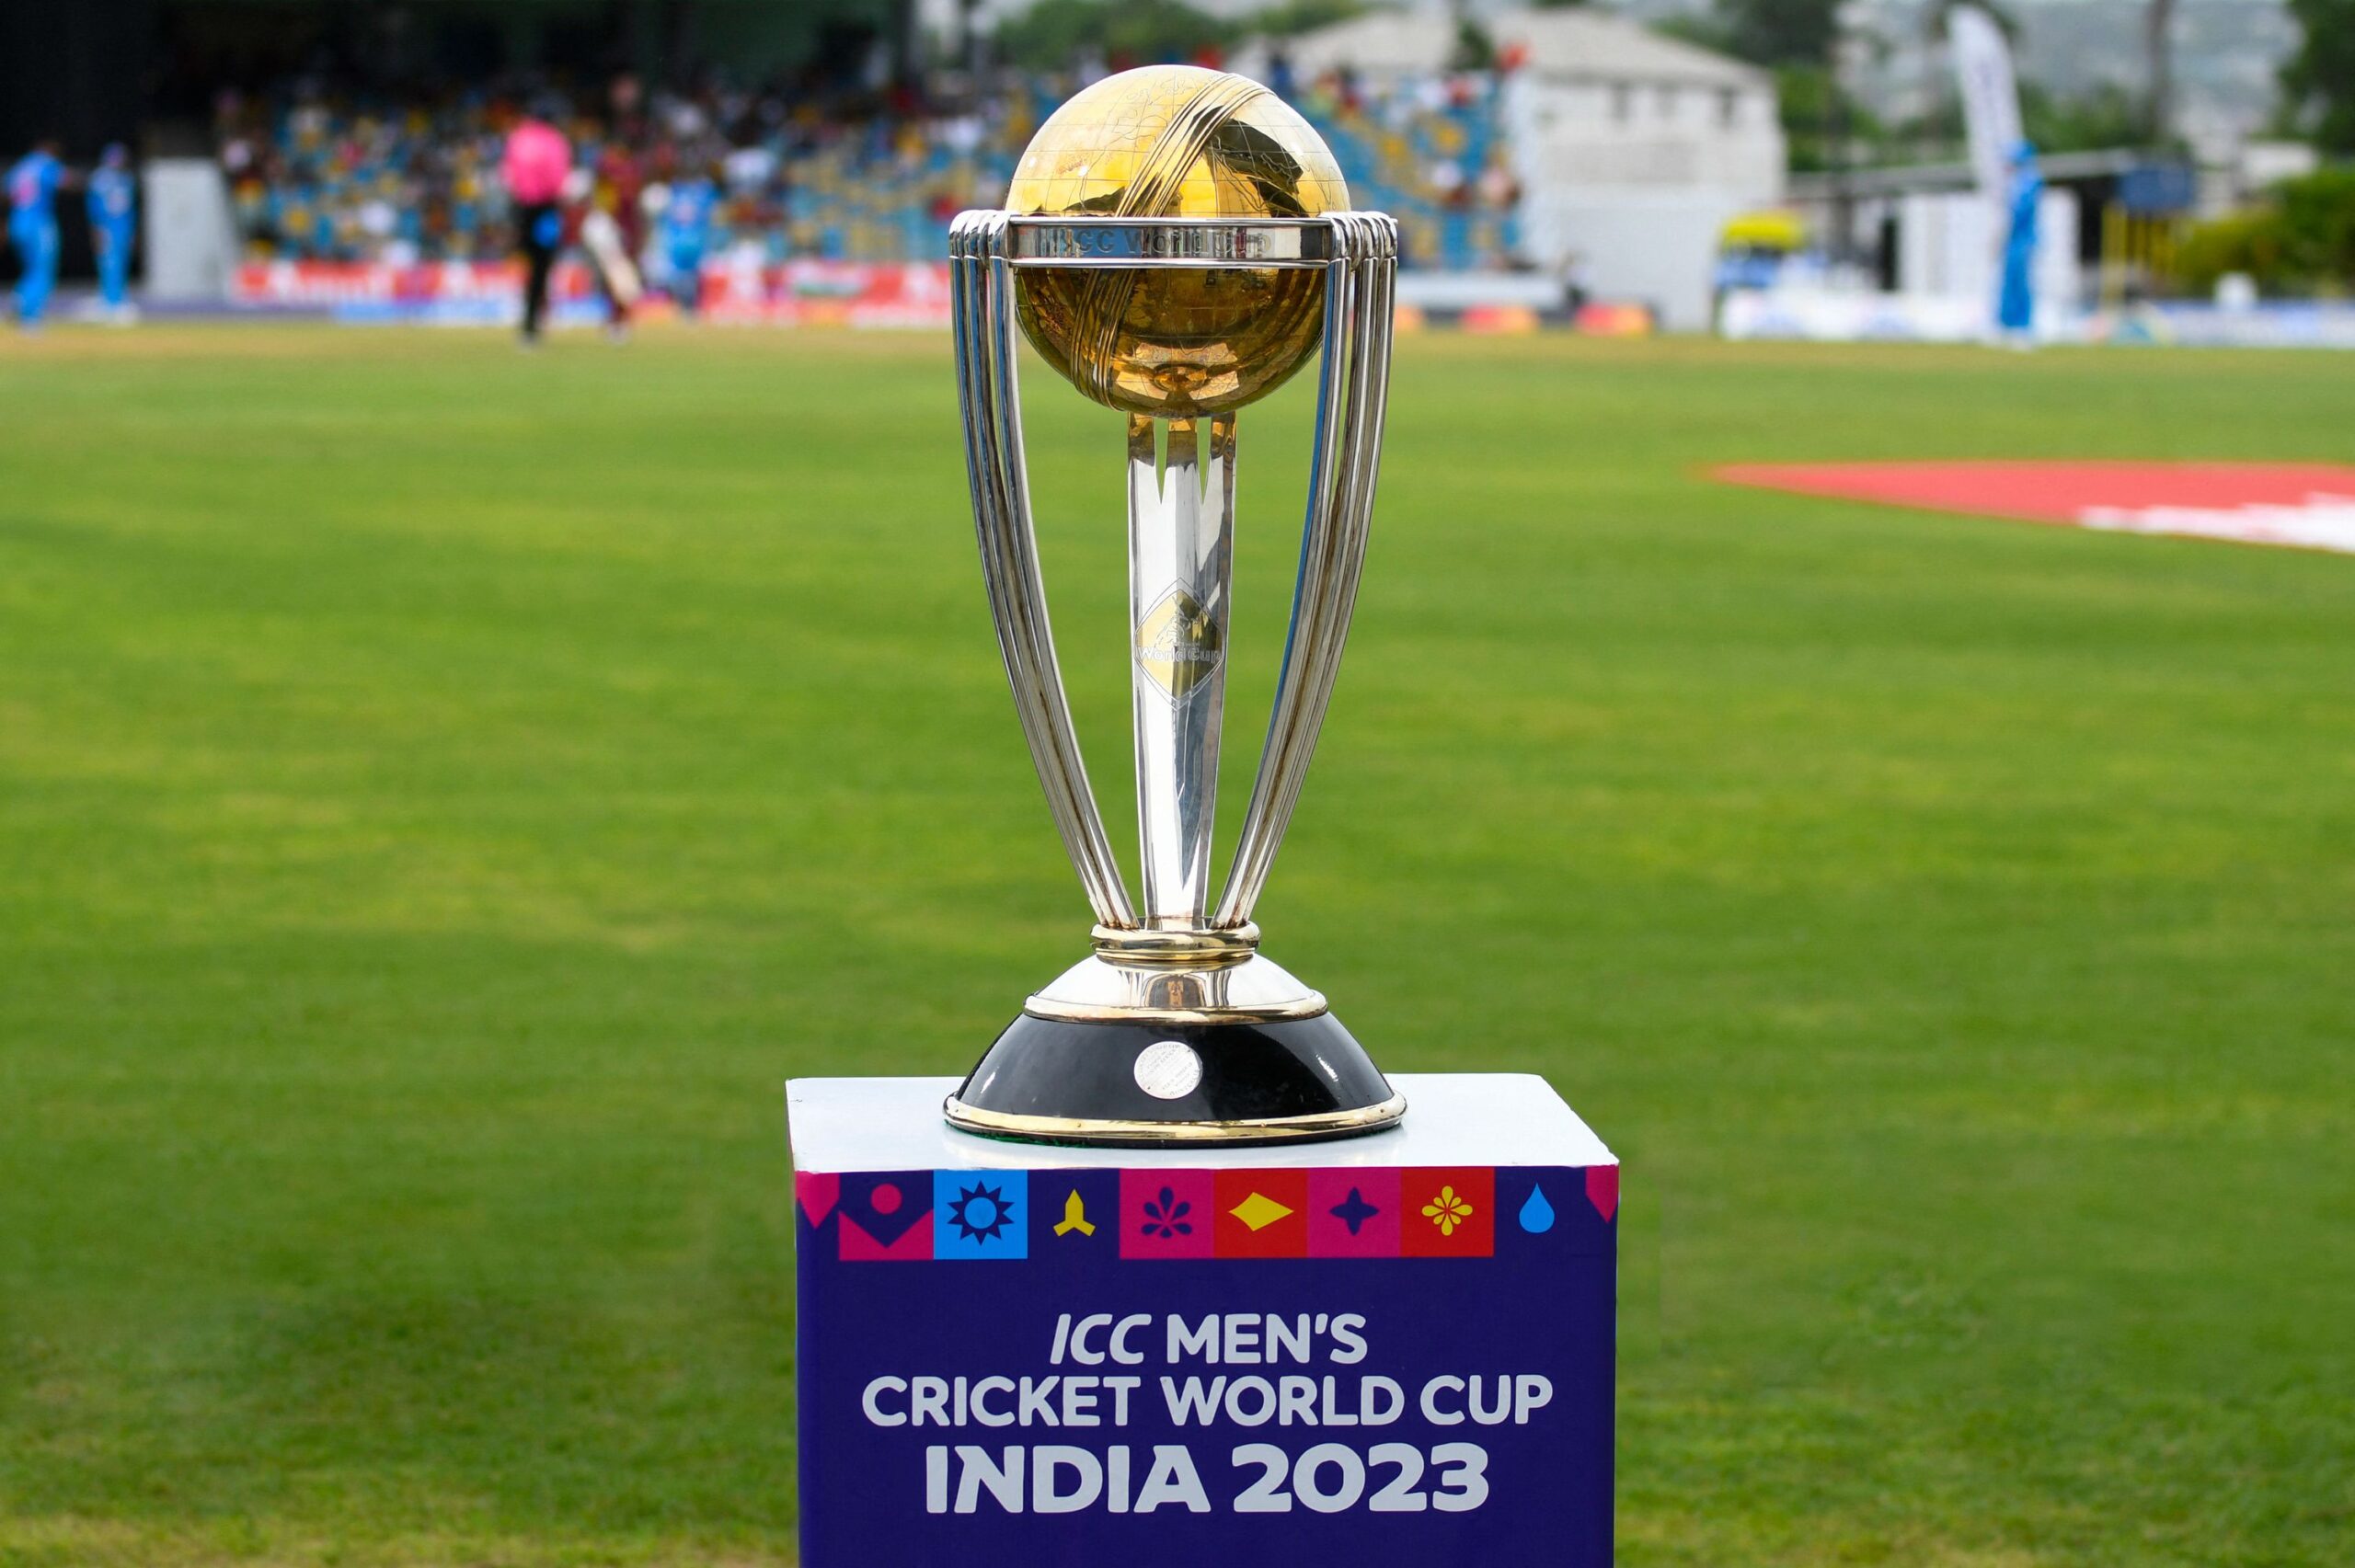 वर्ल्ड कप 2023 की सभी 10 टीमों का हुआ ऐलान, टीम इंडिया से ज्यादा मजबूत दिख रही ये 3 टीमें 1